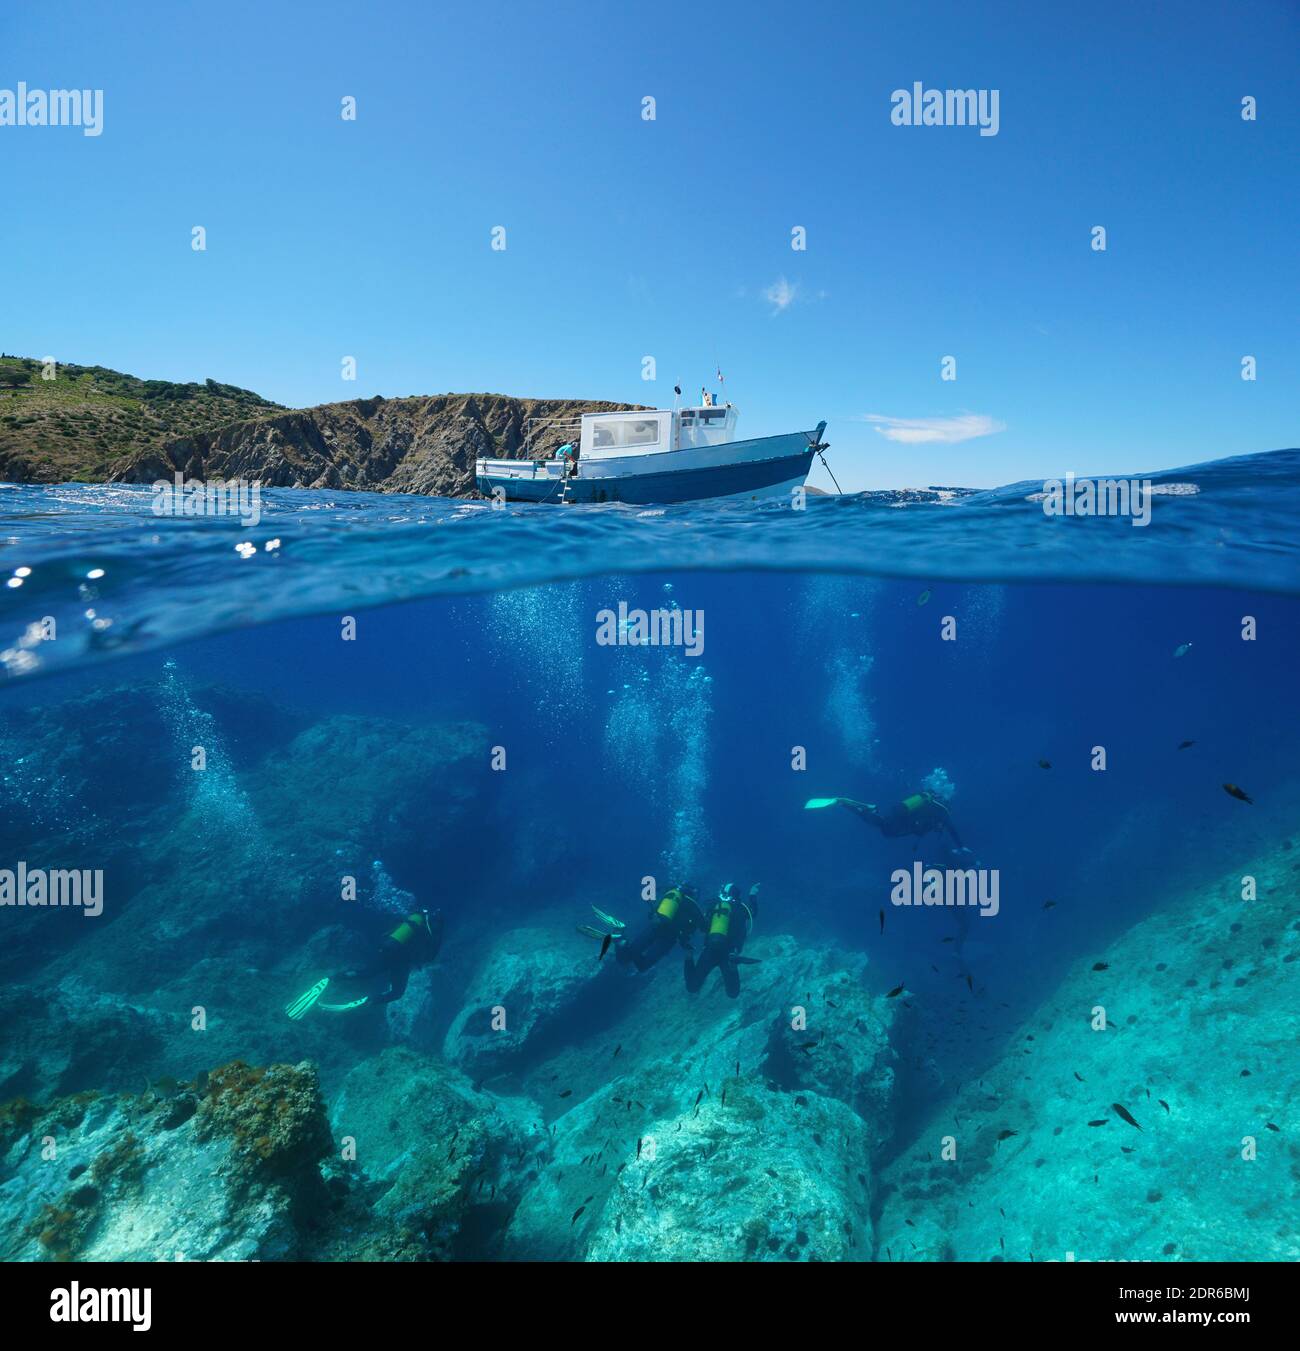 Tauchen, ein Boot an der Oberfläche und Taucher unter Wasser, Mittelmeer, Split Blick über und unter Wasser, Marine Reserve von Cerbere Banyuls Stockfoto